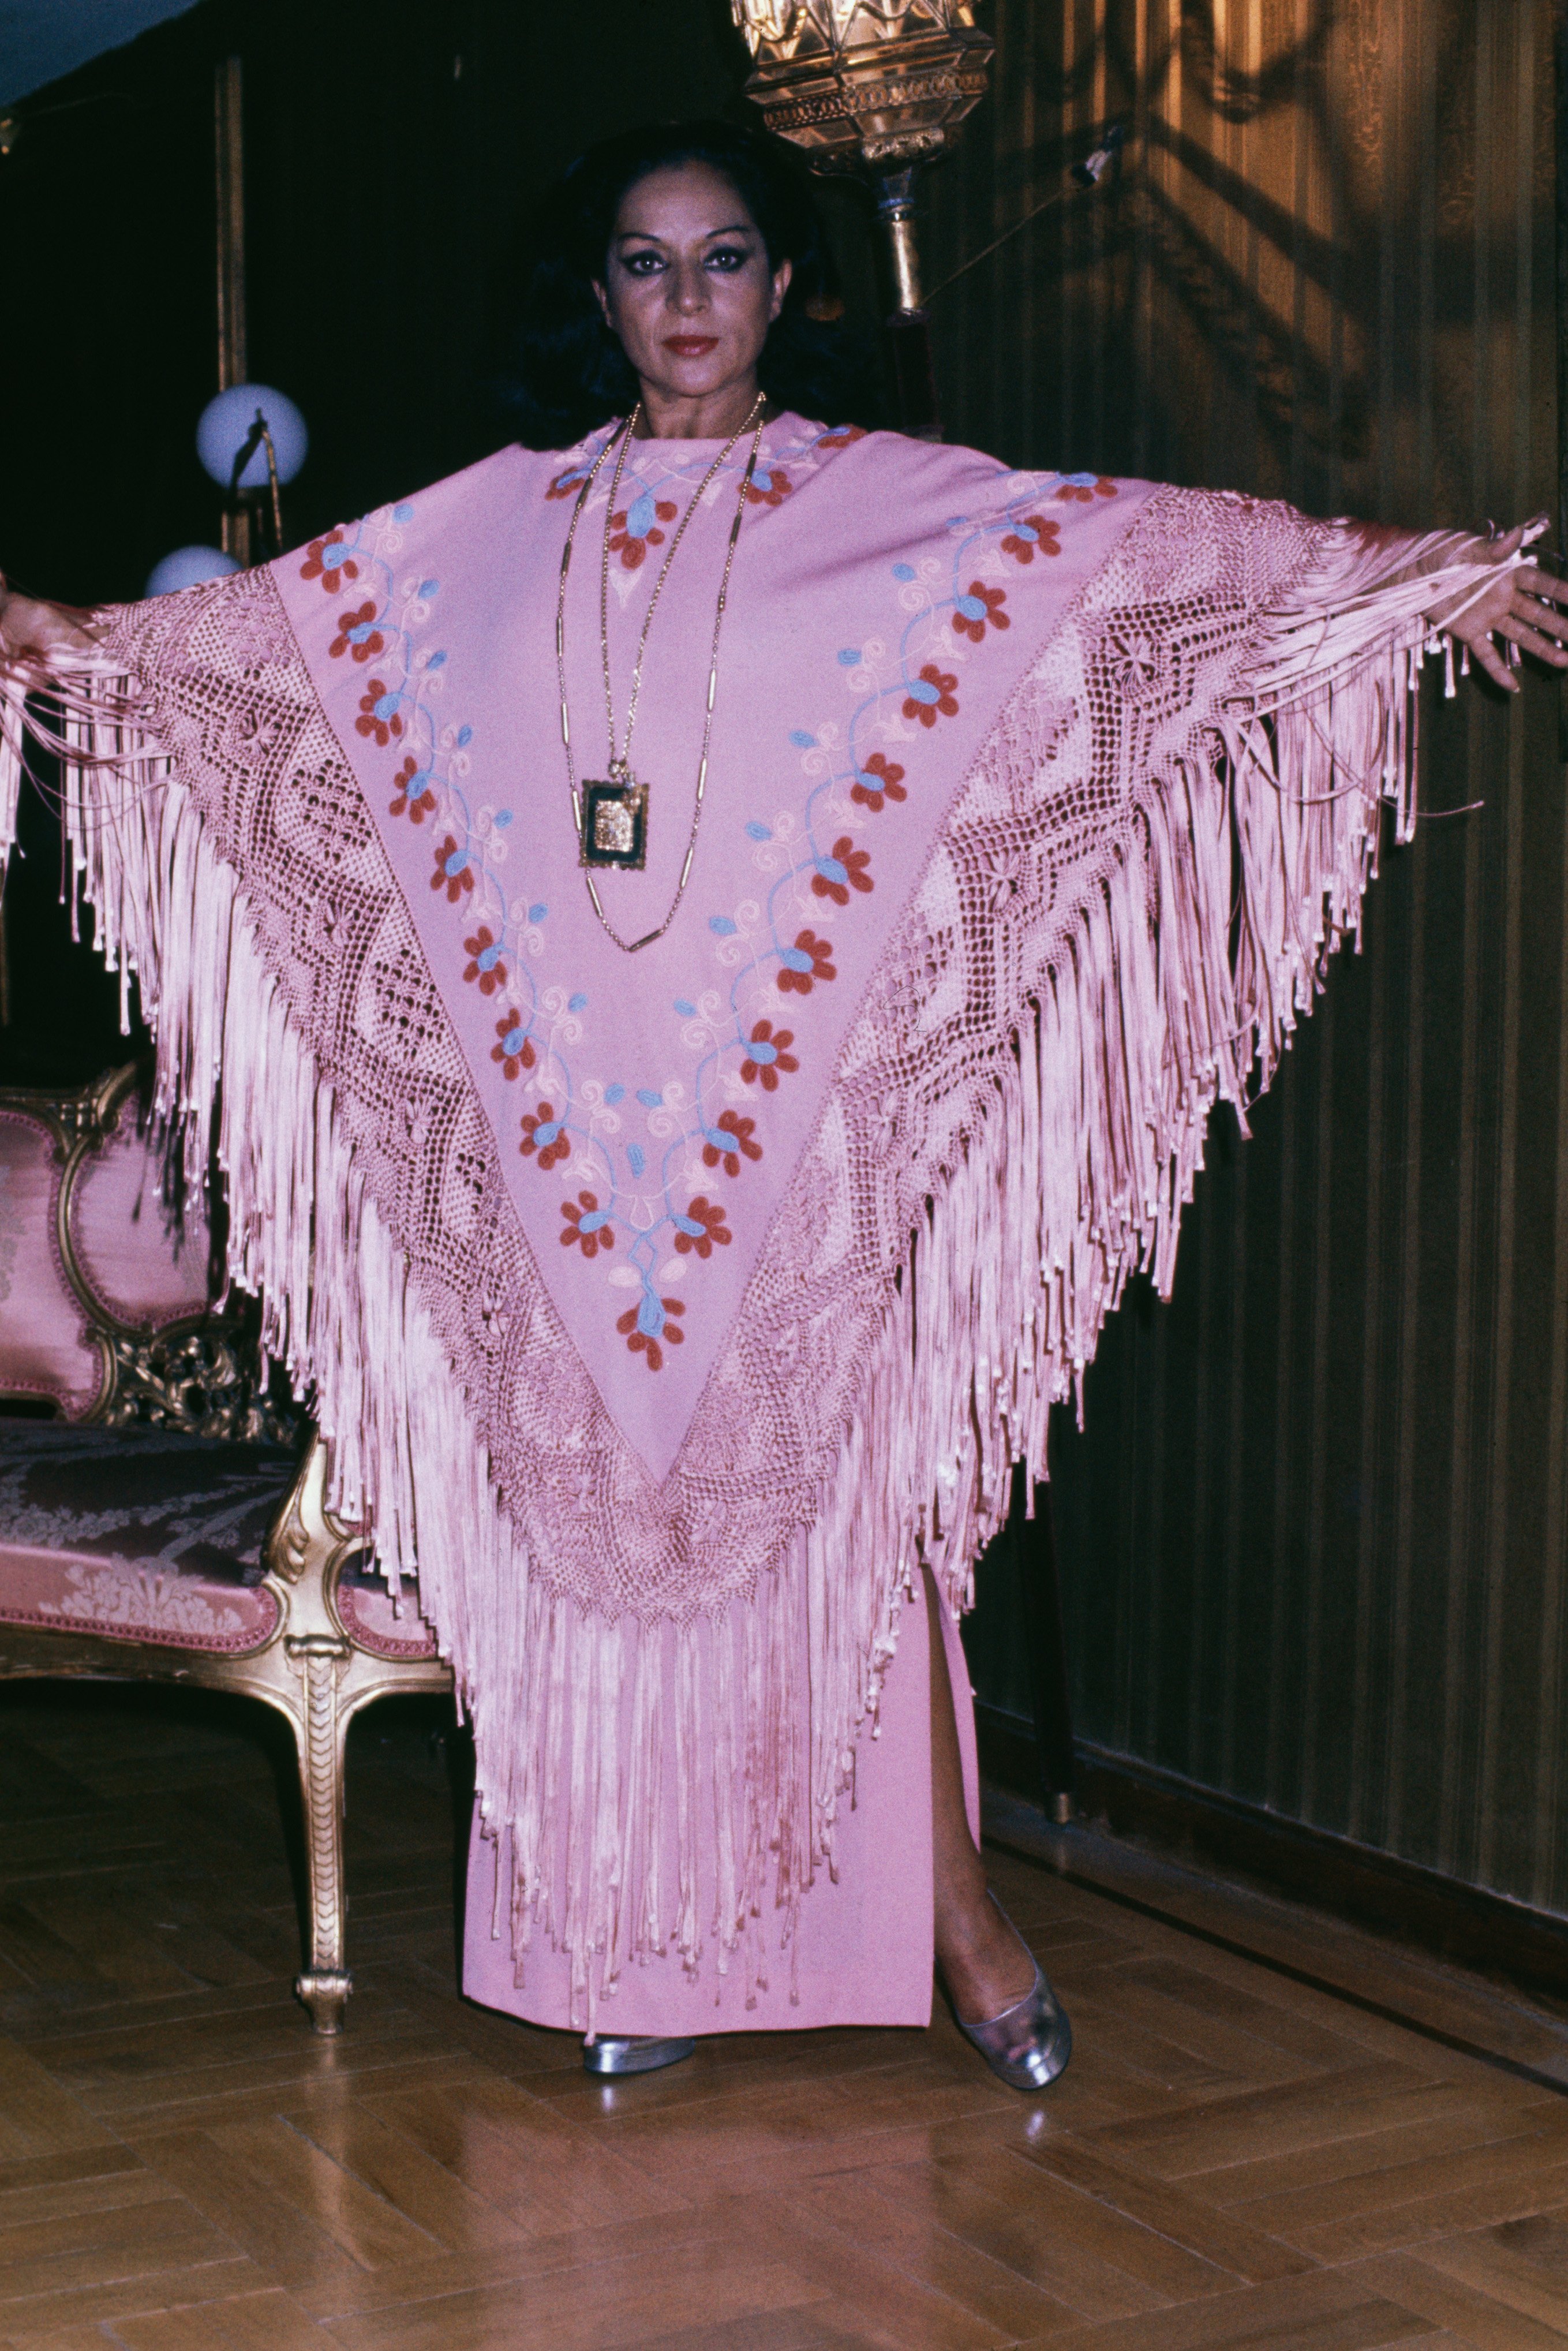 Lola Flores en la presentación de un nuevo traje de noche en 1976, Madrid, Castilla La Mancha, España. | Foto: Getty Images